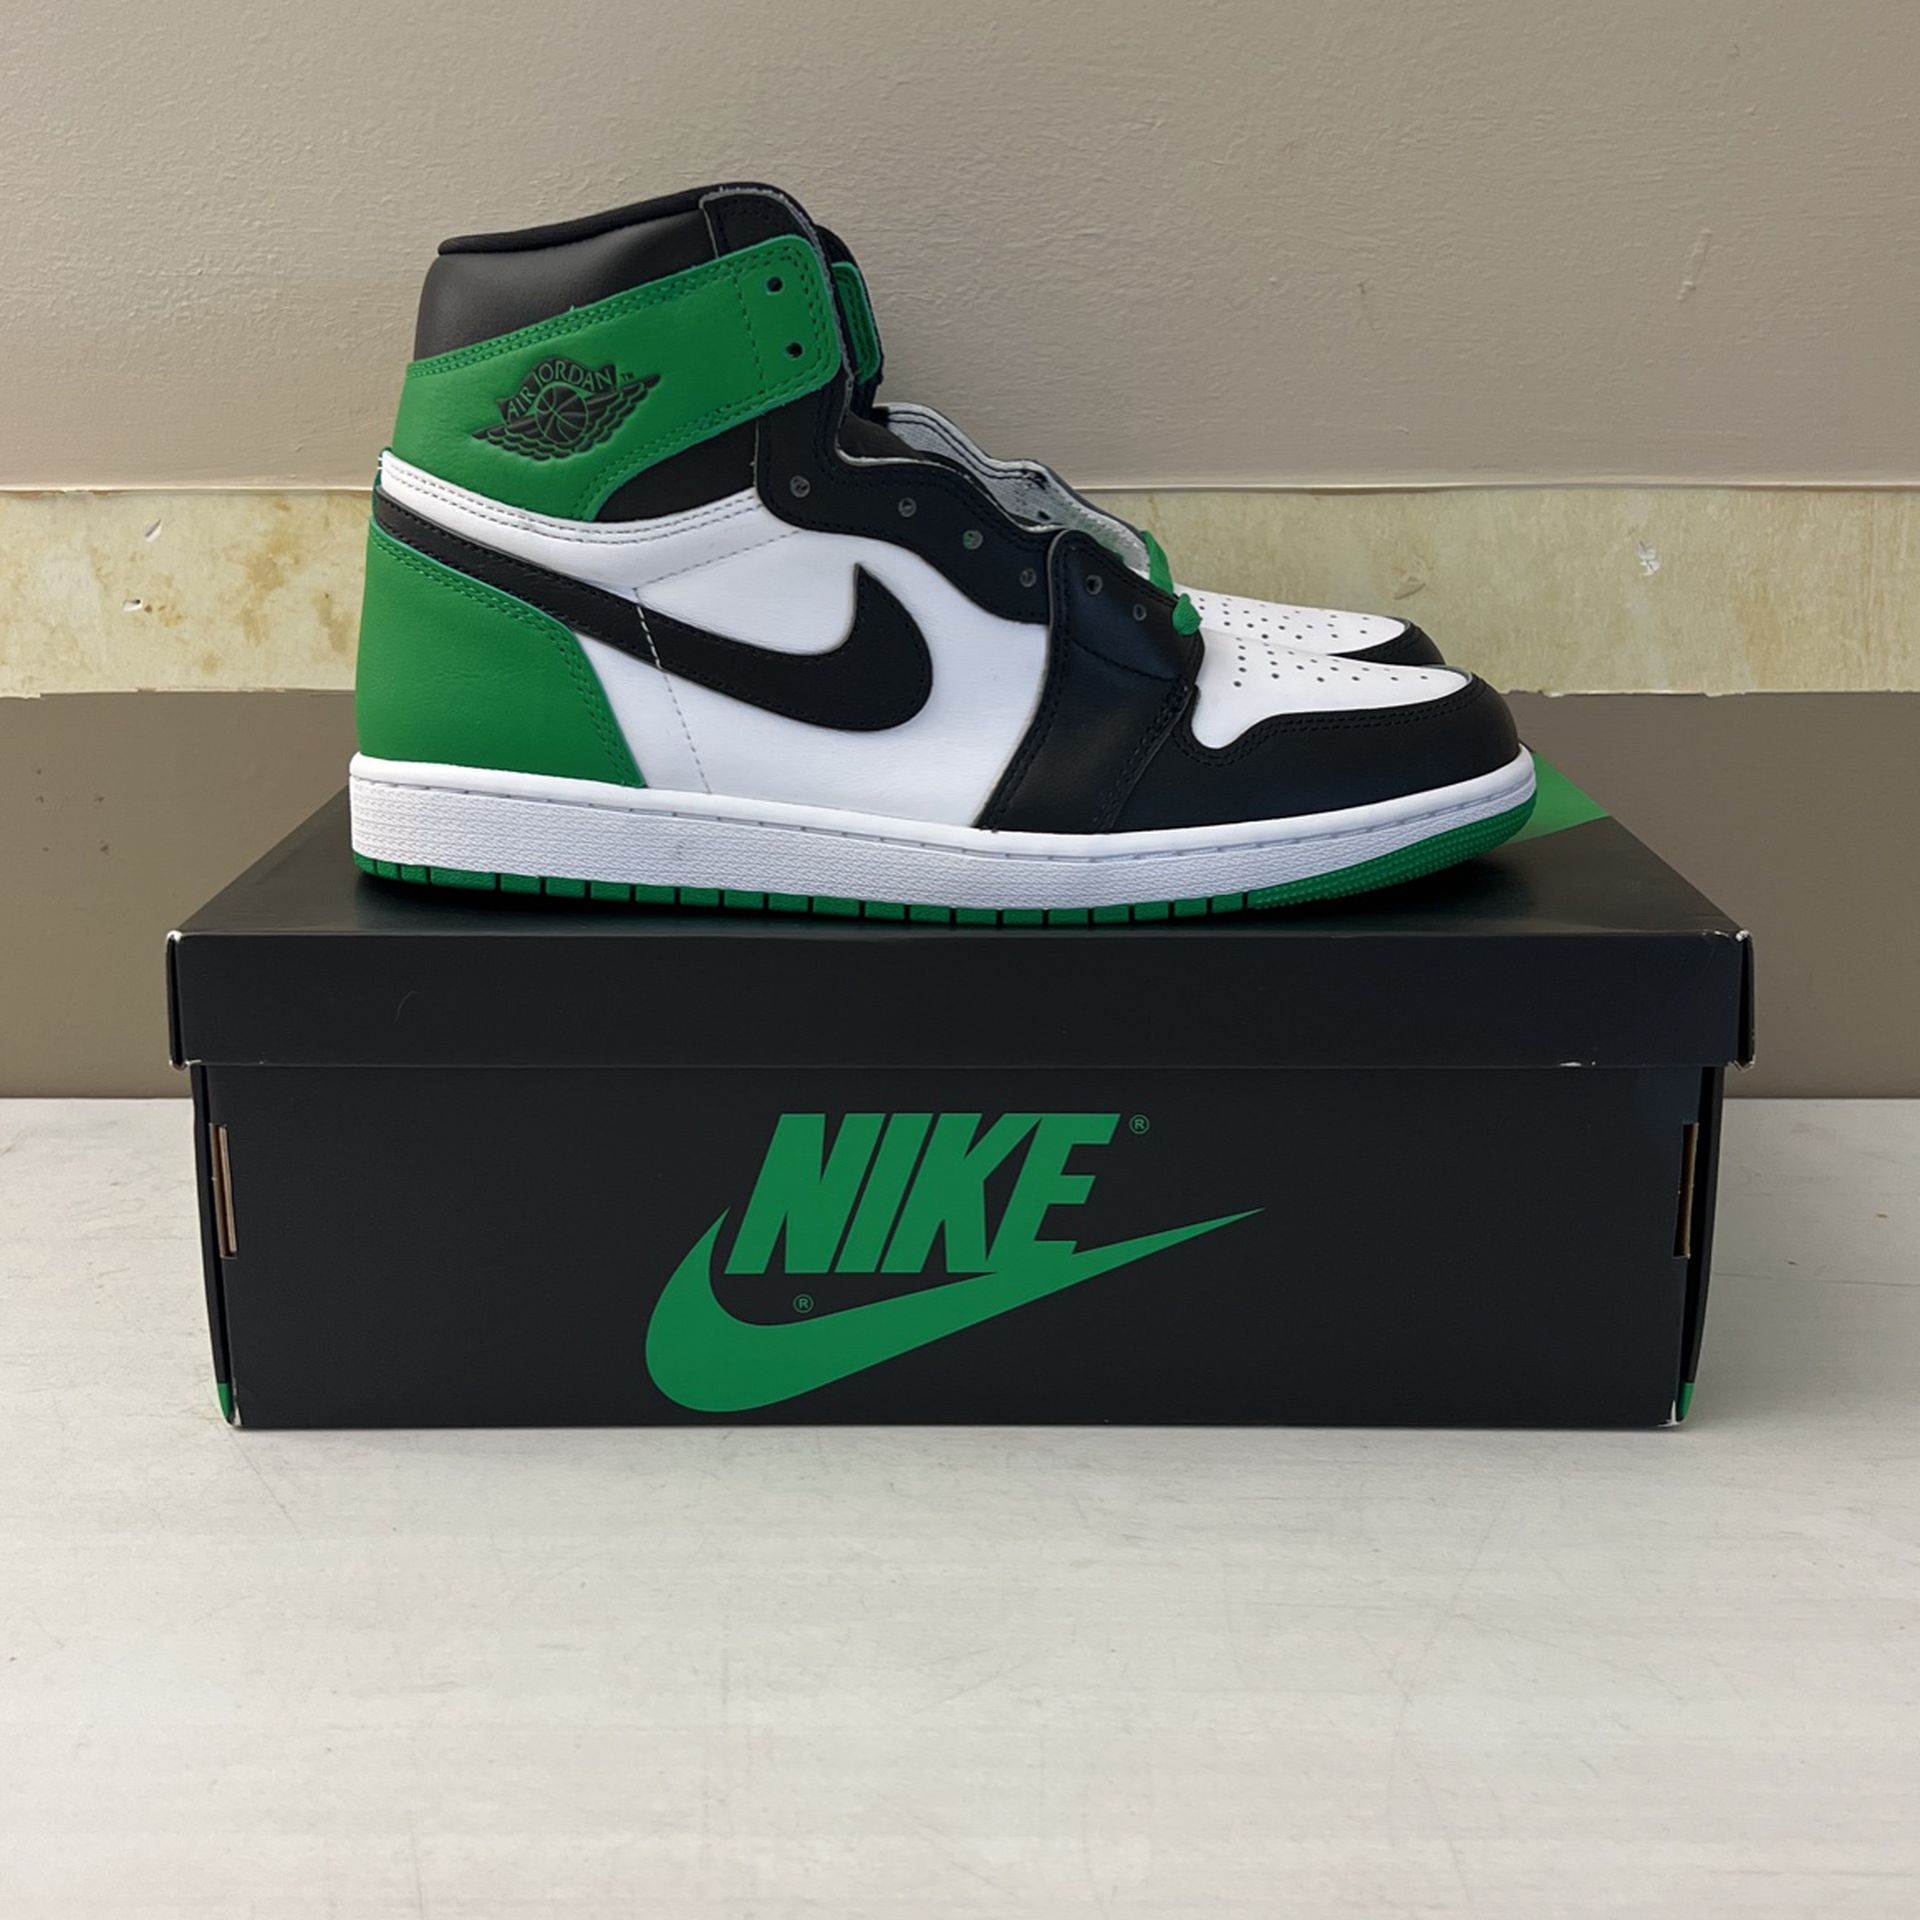 Jordan 1 Lucky Green (Size 11) Brand New